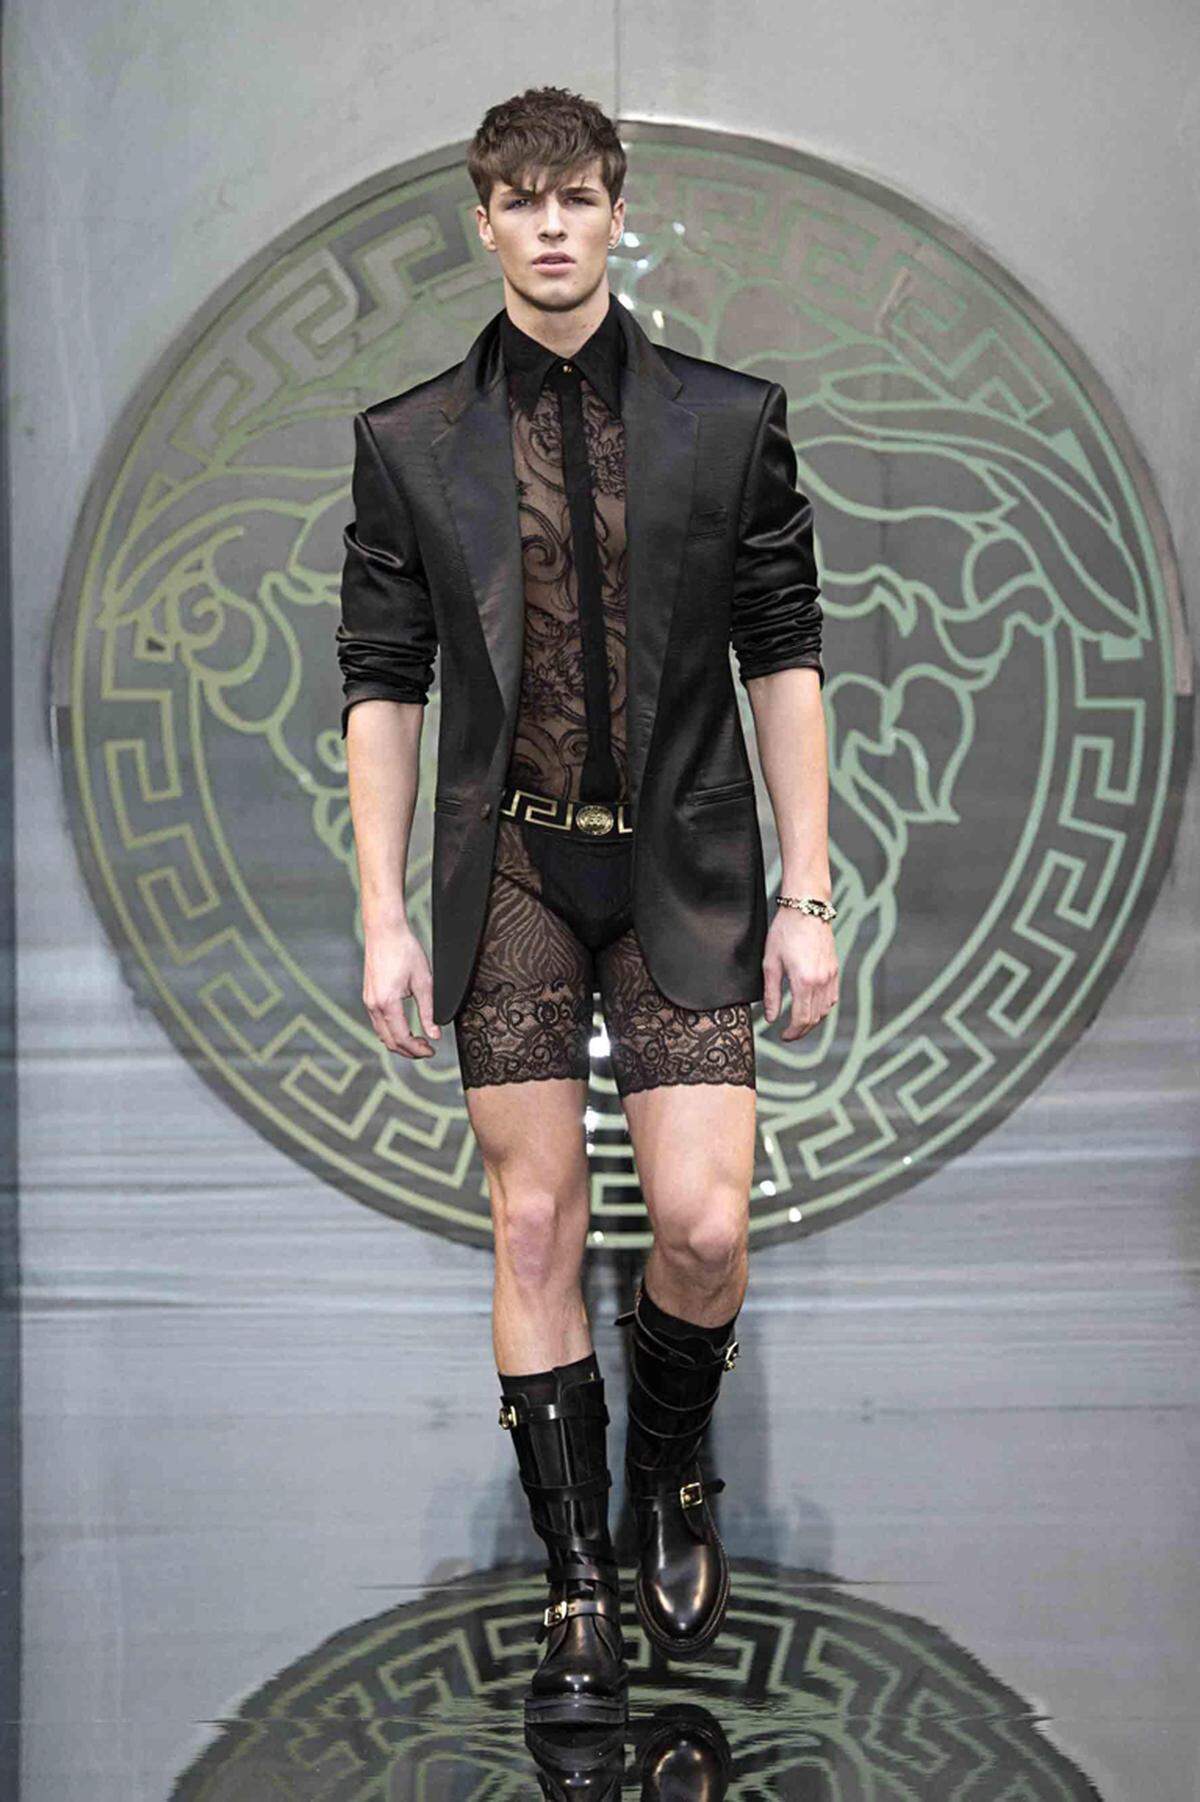 Es scheint, als habe der Trend zu Transparenz und Lingerie nun auch die Männerwelt erreicht. Donatella Versace kleidet ihre Models zumindest in zarte Spitzenbodys.